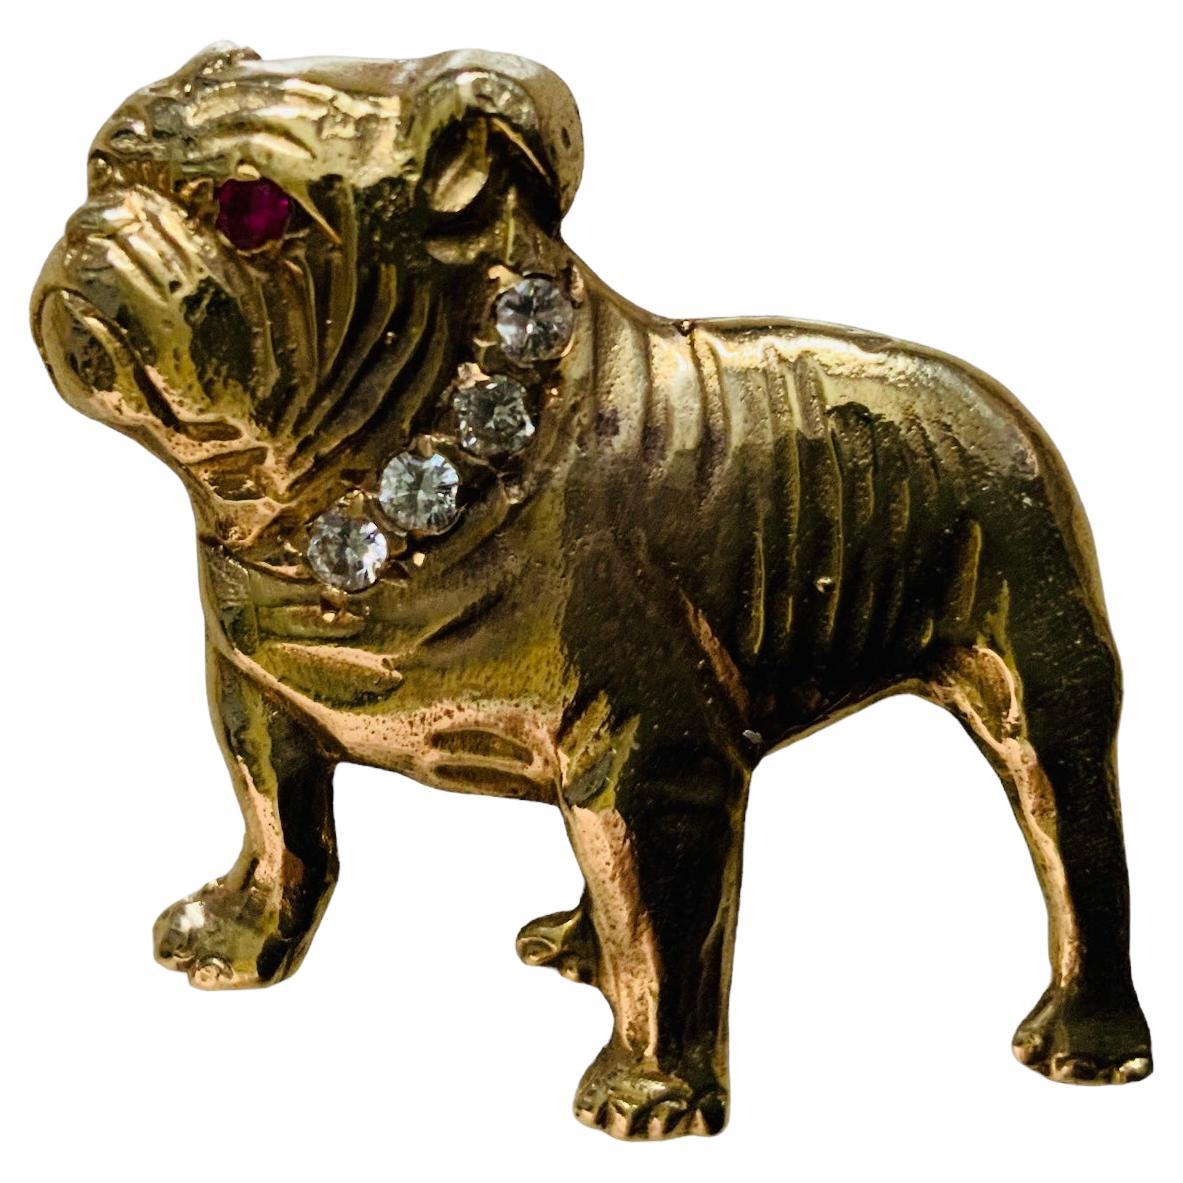 Dies ist ein 14K Gelbgold, Diamant und Rubin Bulldog Pin / Brosche. Es zeigt eine aufrecht stehende Bulldogge, die mit einer Halskette aus vier Diamanten in Pflasterfassung und einem Rubinauge in der gleichen Fassung geschmückt ist.